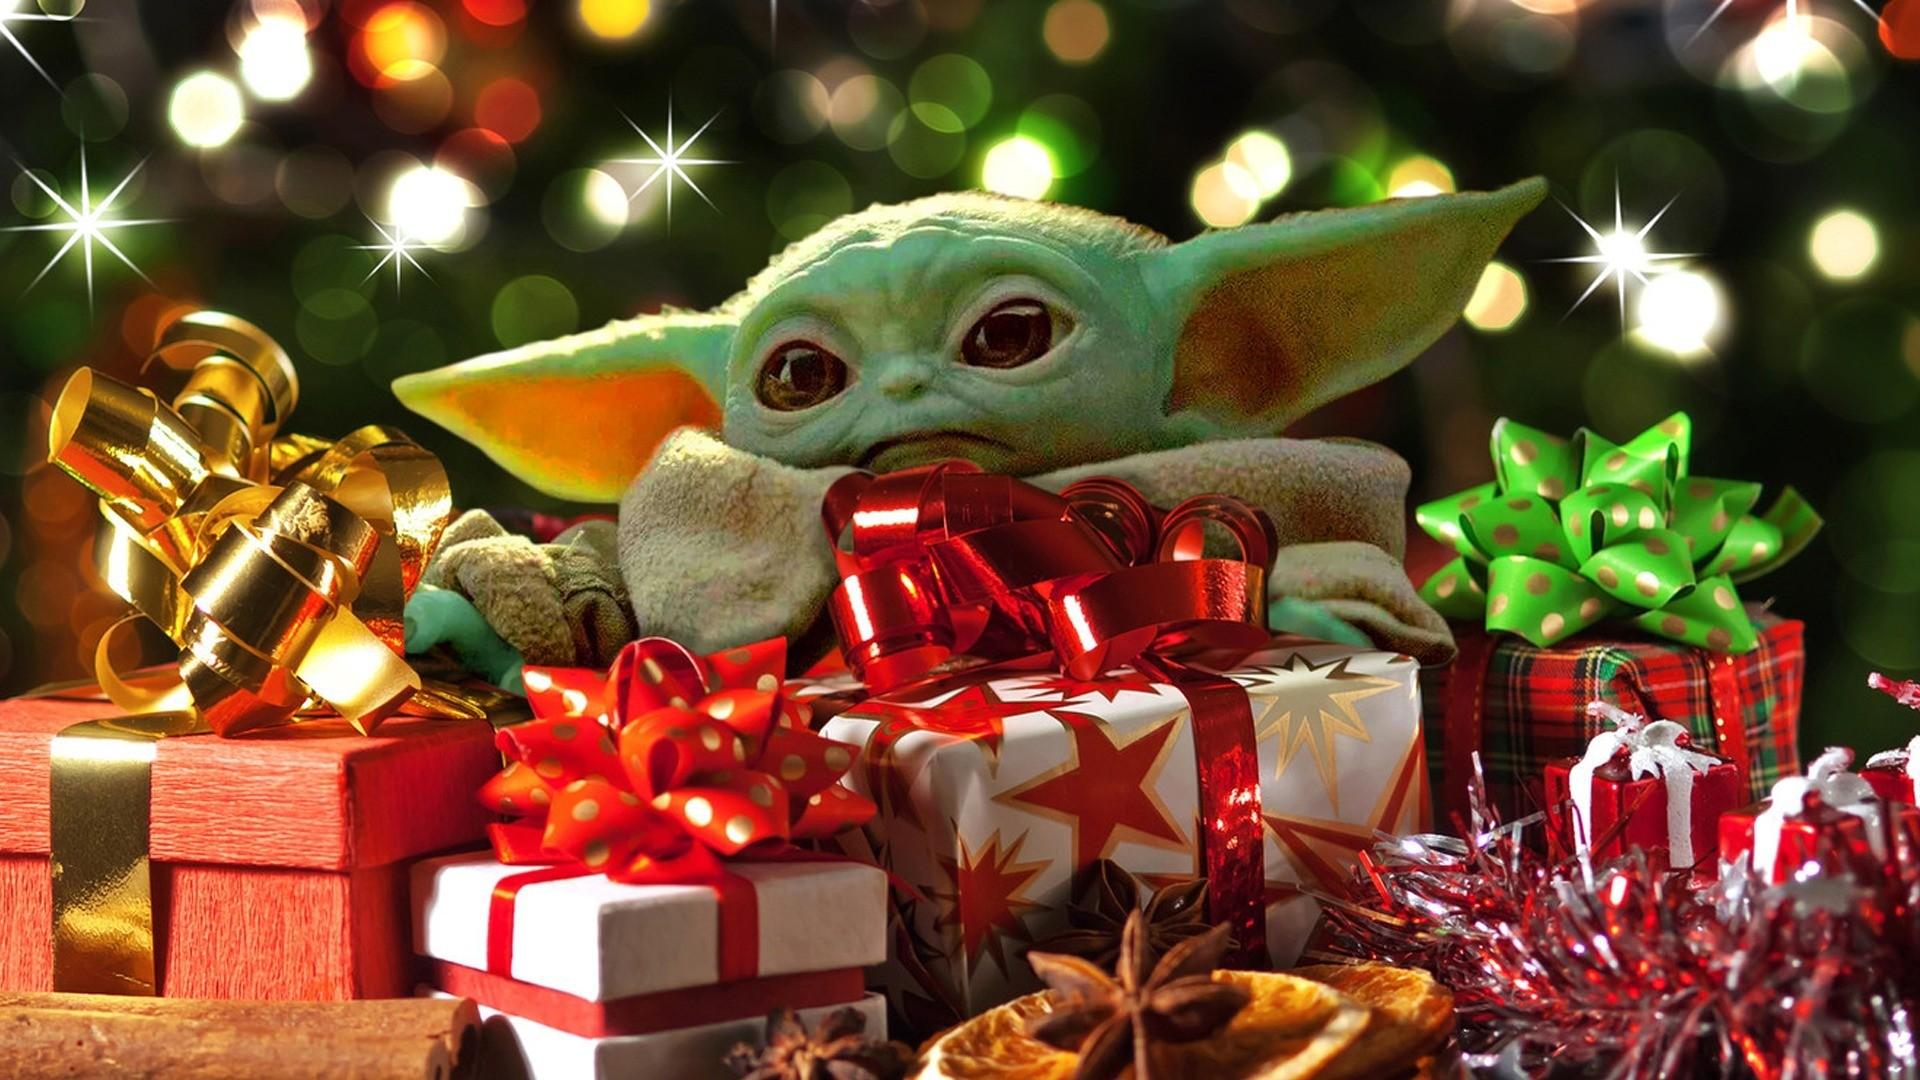 Với bộ sưu tập hình nền Giáng Sinh của Baby Yoda, bạn sẽ không bao giờ cảm thấy nhàm chán khi sử dụng điện thoại hay máy tính. Hình ảnh bé Yoda trong những bộ đồ Giáng Sinh sẽ mang đến cho bạn cảm giác ấm cúng và ngập tràn niềm vui.